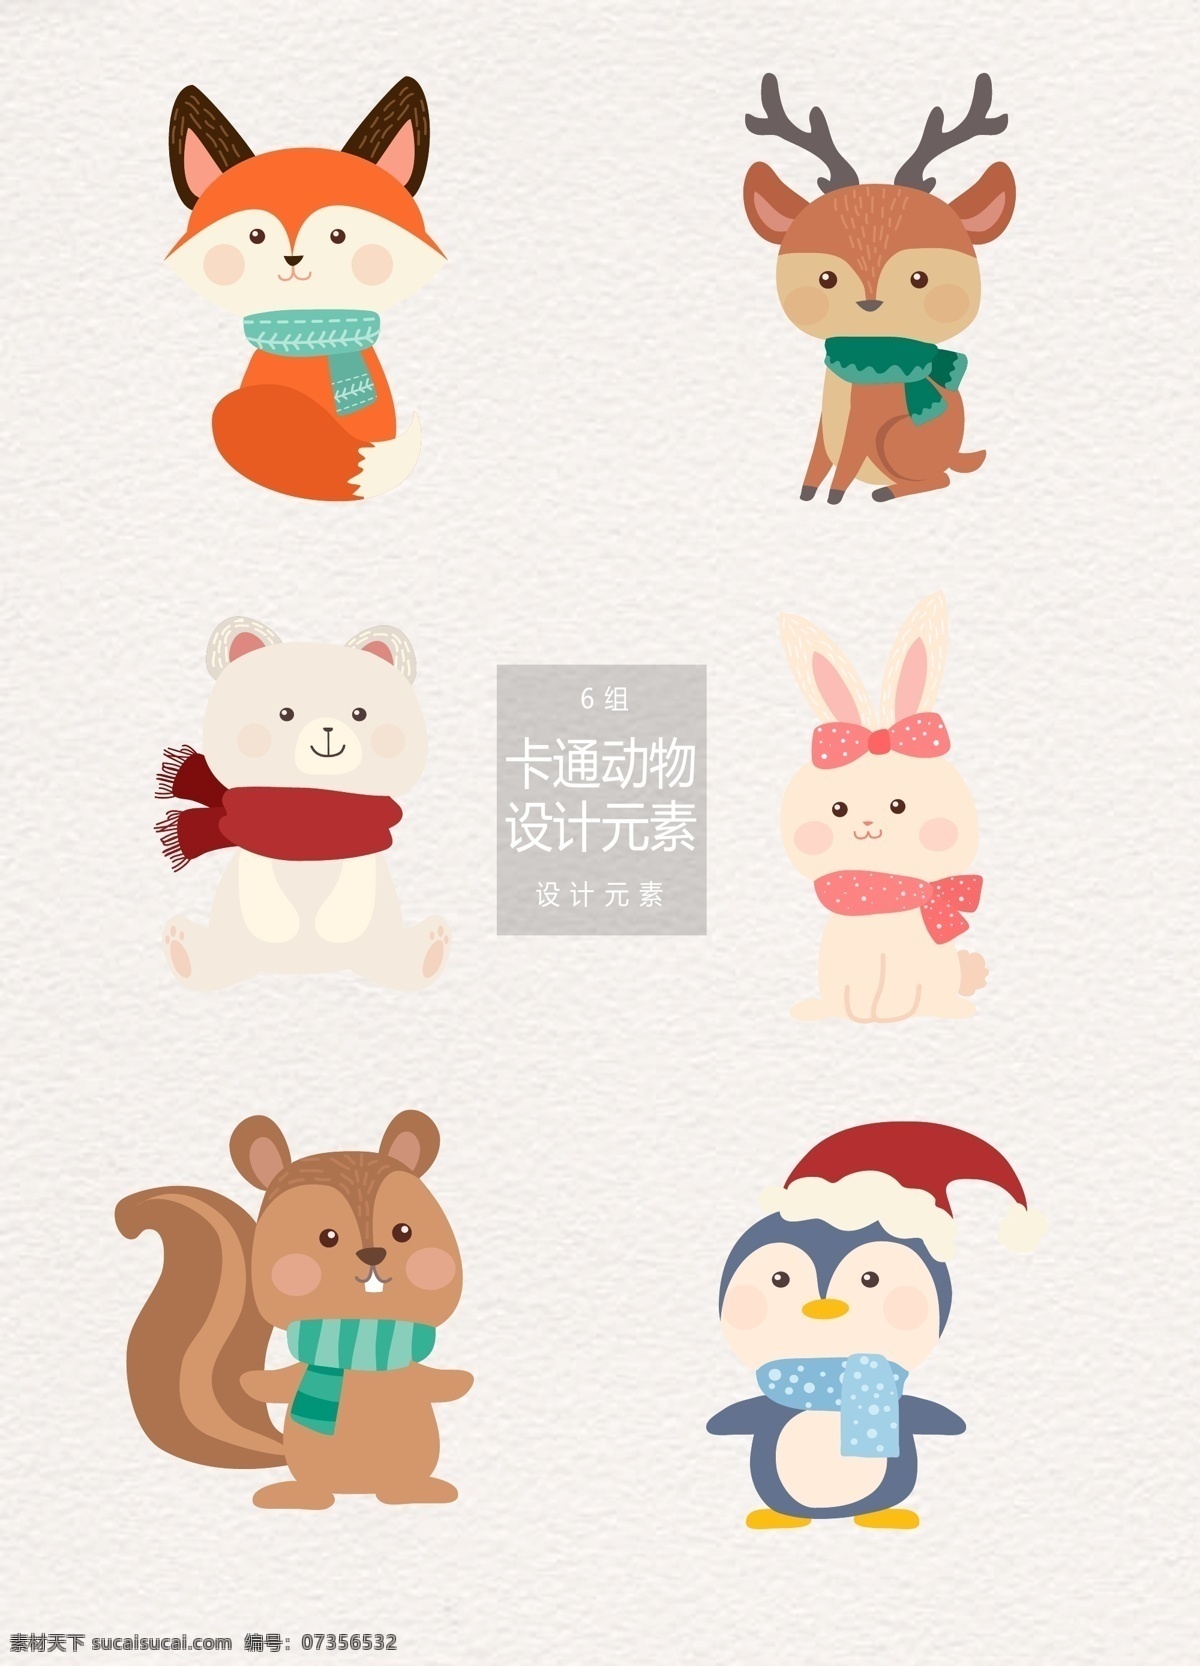 冬季 可爱 卡通 动物 元素 卡通动物 冬天 设计元素 狐狸 麋鹿 北极熊 兔子 企鹅 松鼠